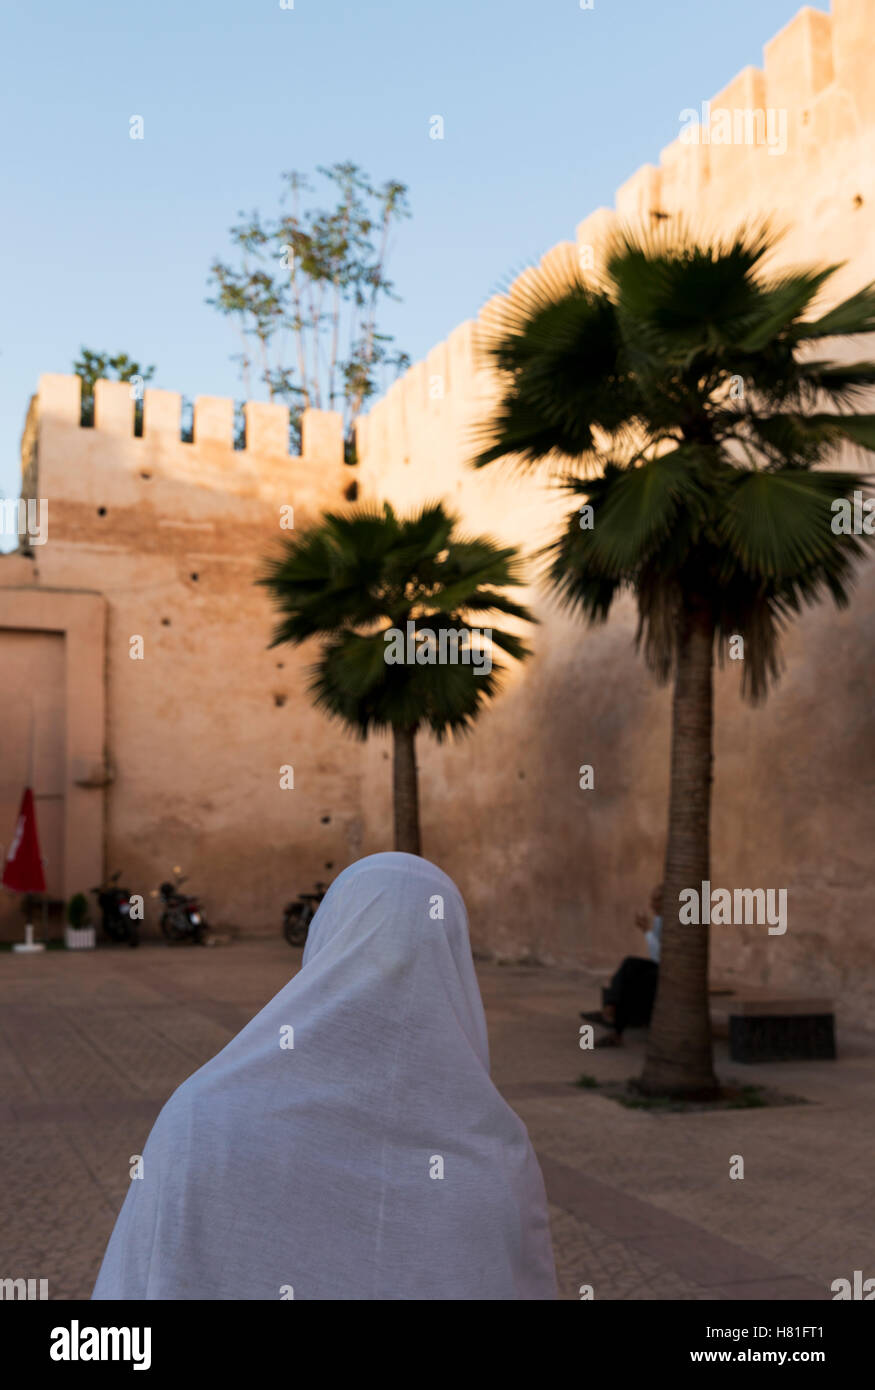 Le Maroc, Meknès, vue sur la ville fortifiée avec une personne et de palmiers Banque D'Images